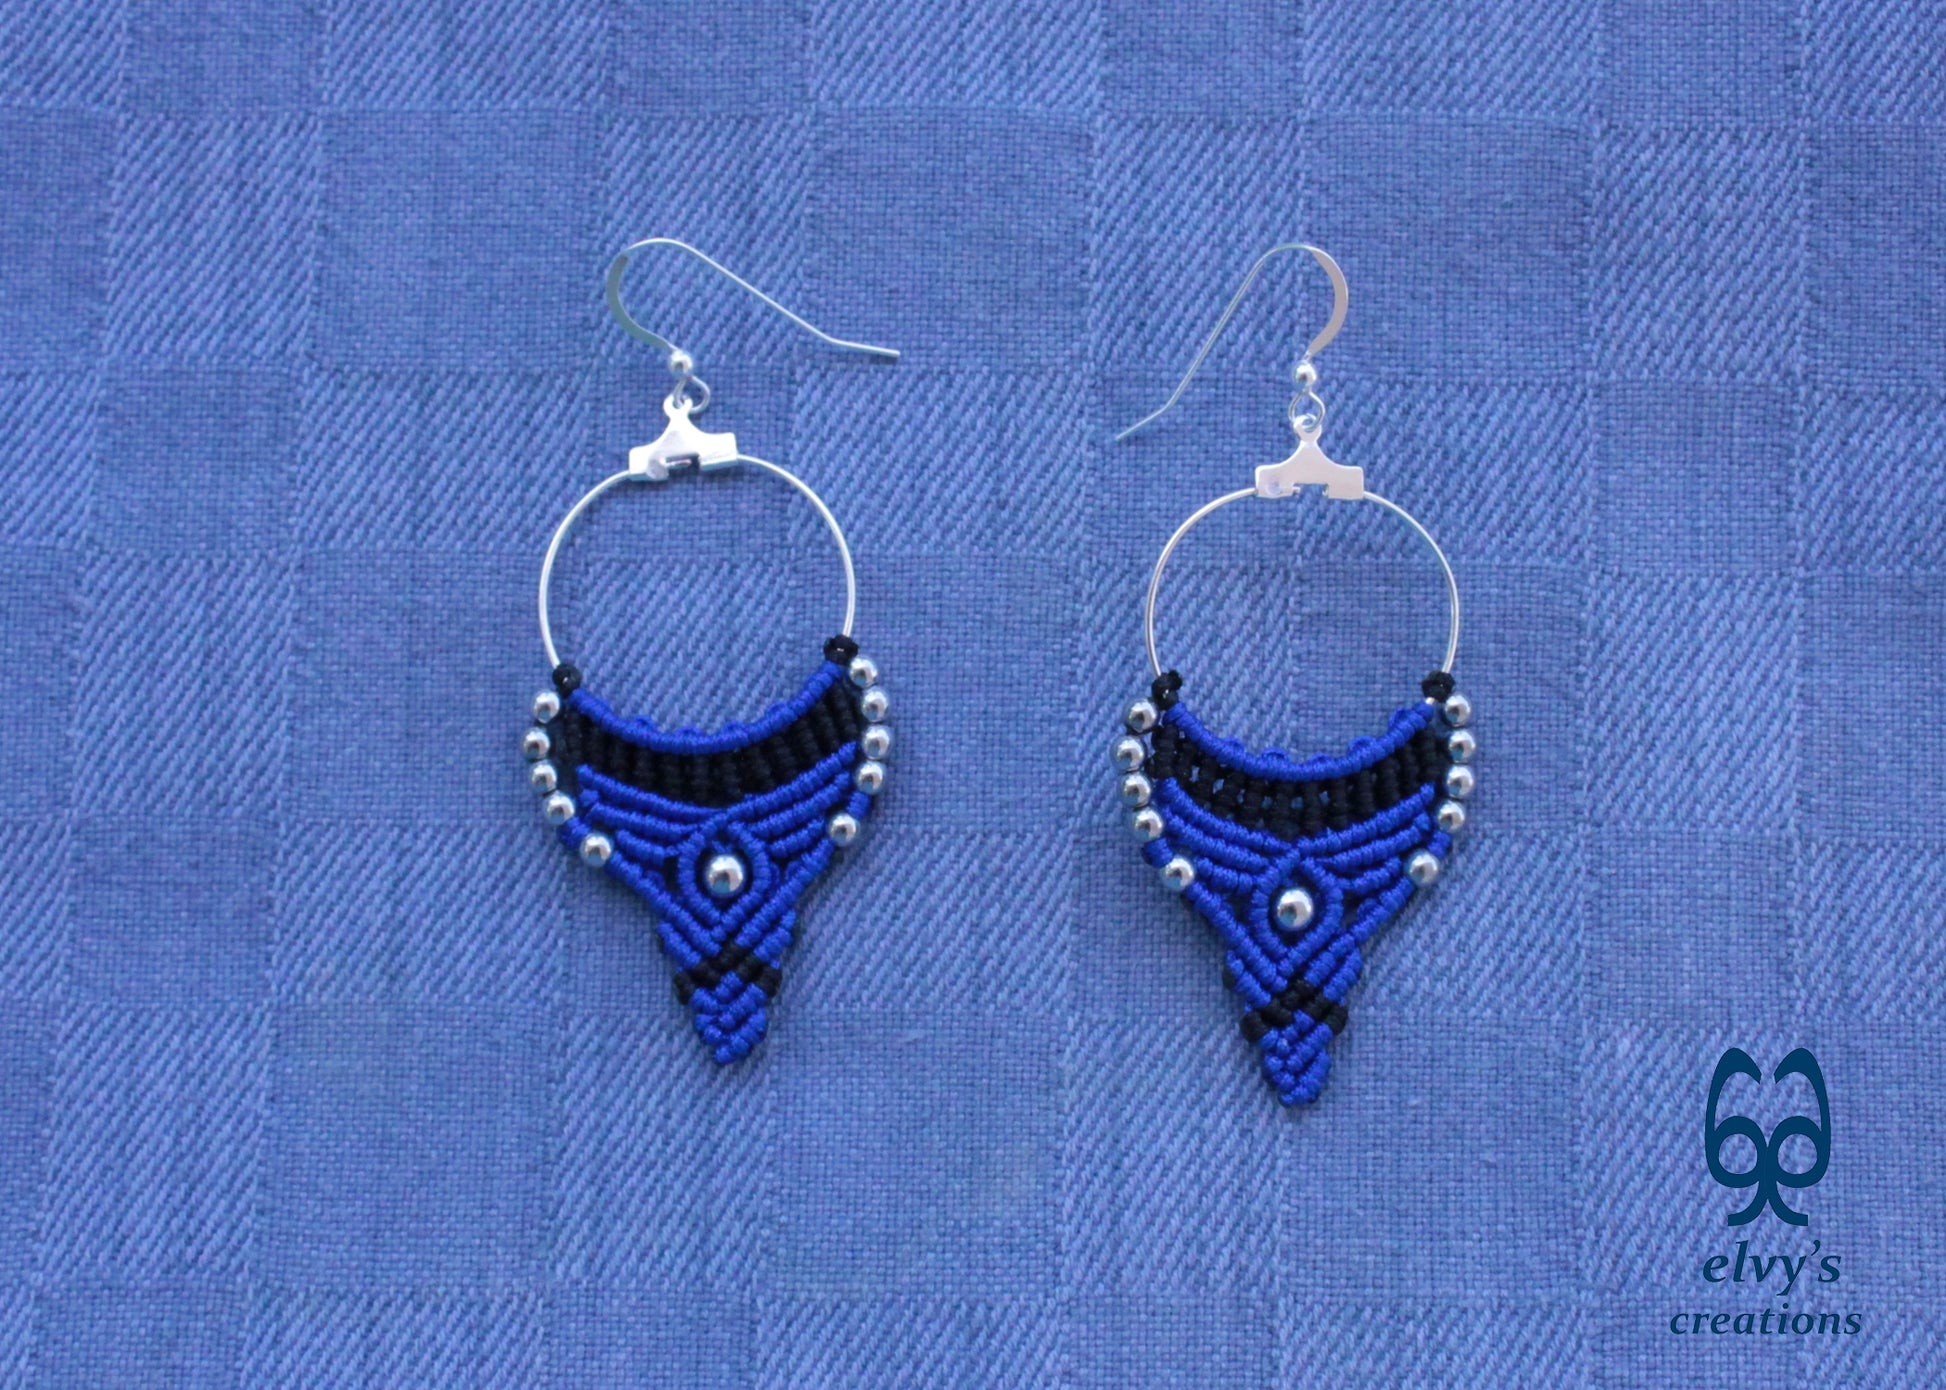 Blue and Black Macrame Earrings Hematite Gemstones Hoop Earrings